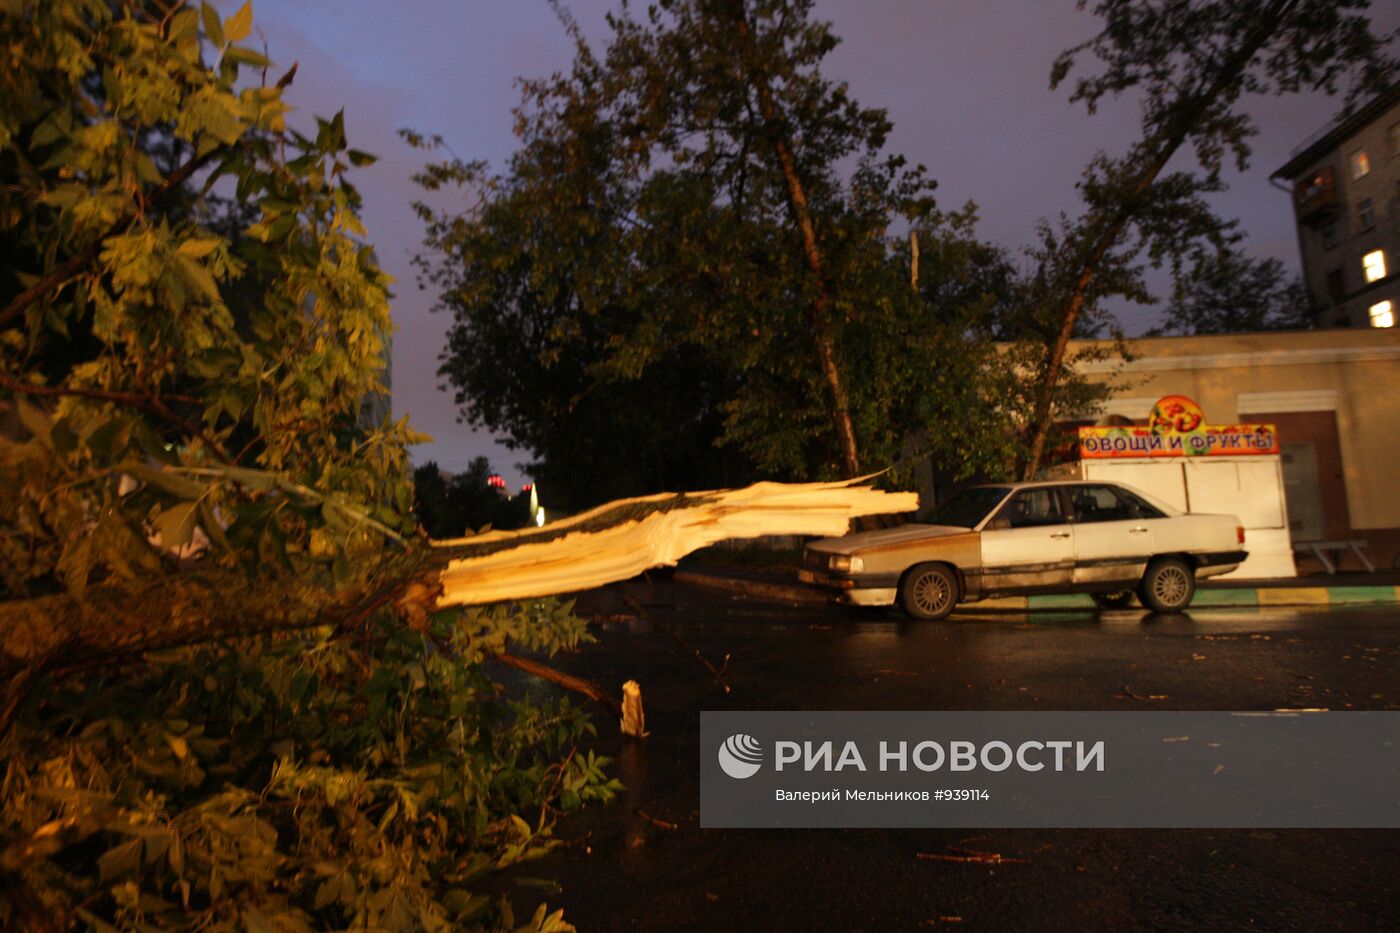 Последствия сильной грозы со шквалистым ветром в Москве